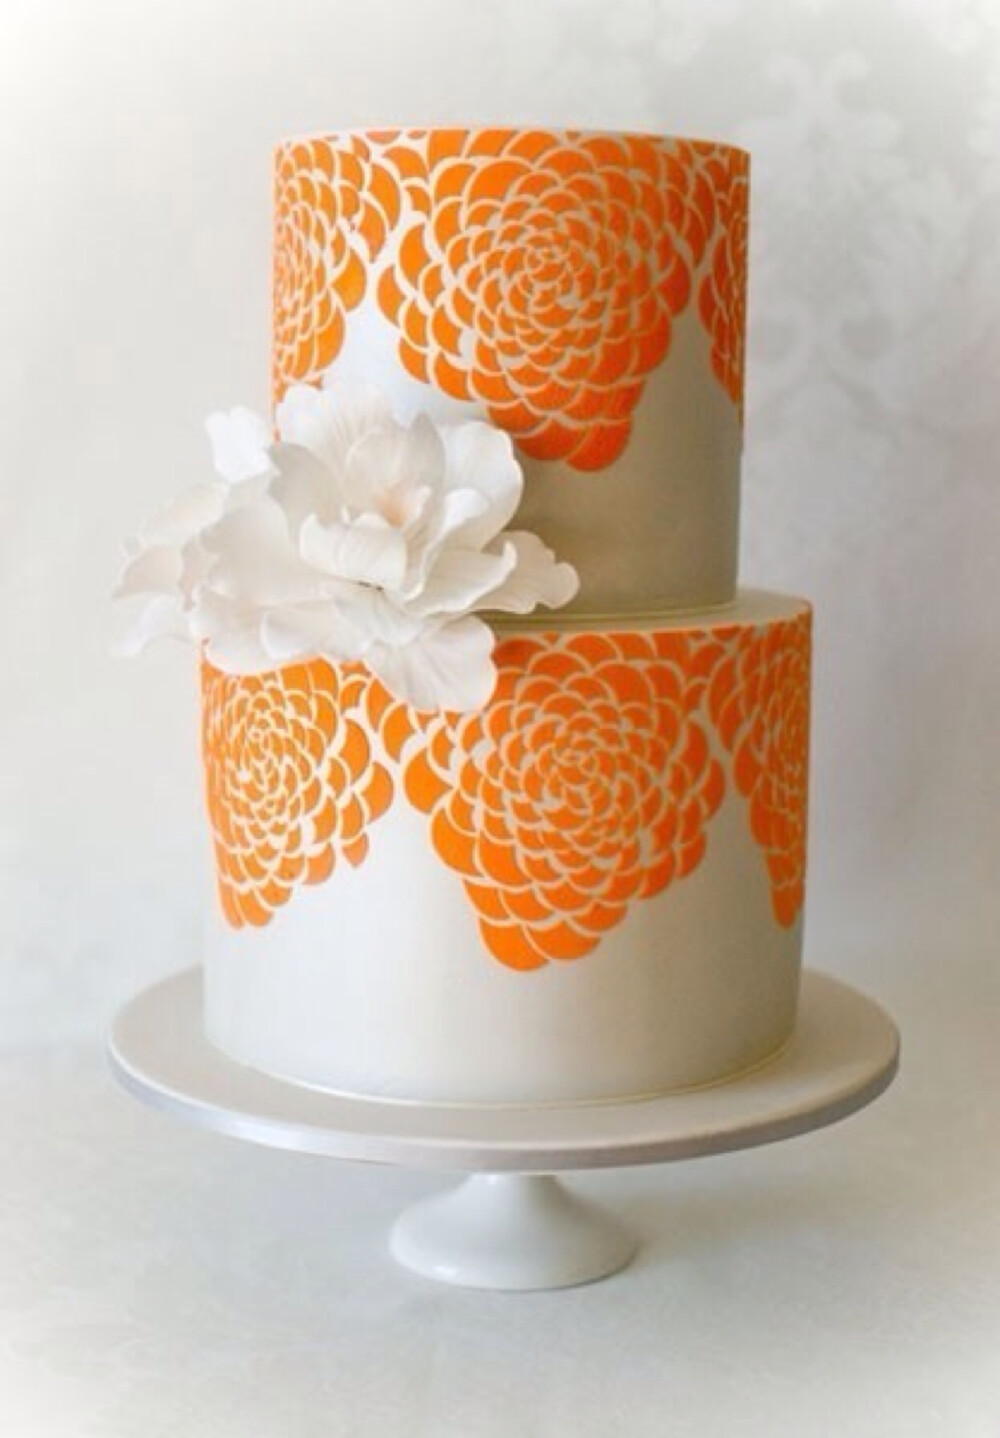 【彩绘婚礼蛋糕】甜品专家以蛋糕作为他们创作的素材,将他们的绘画